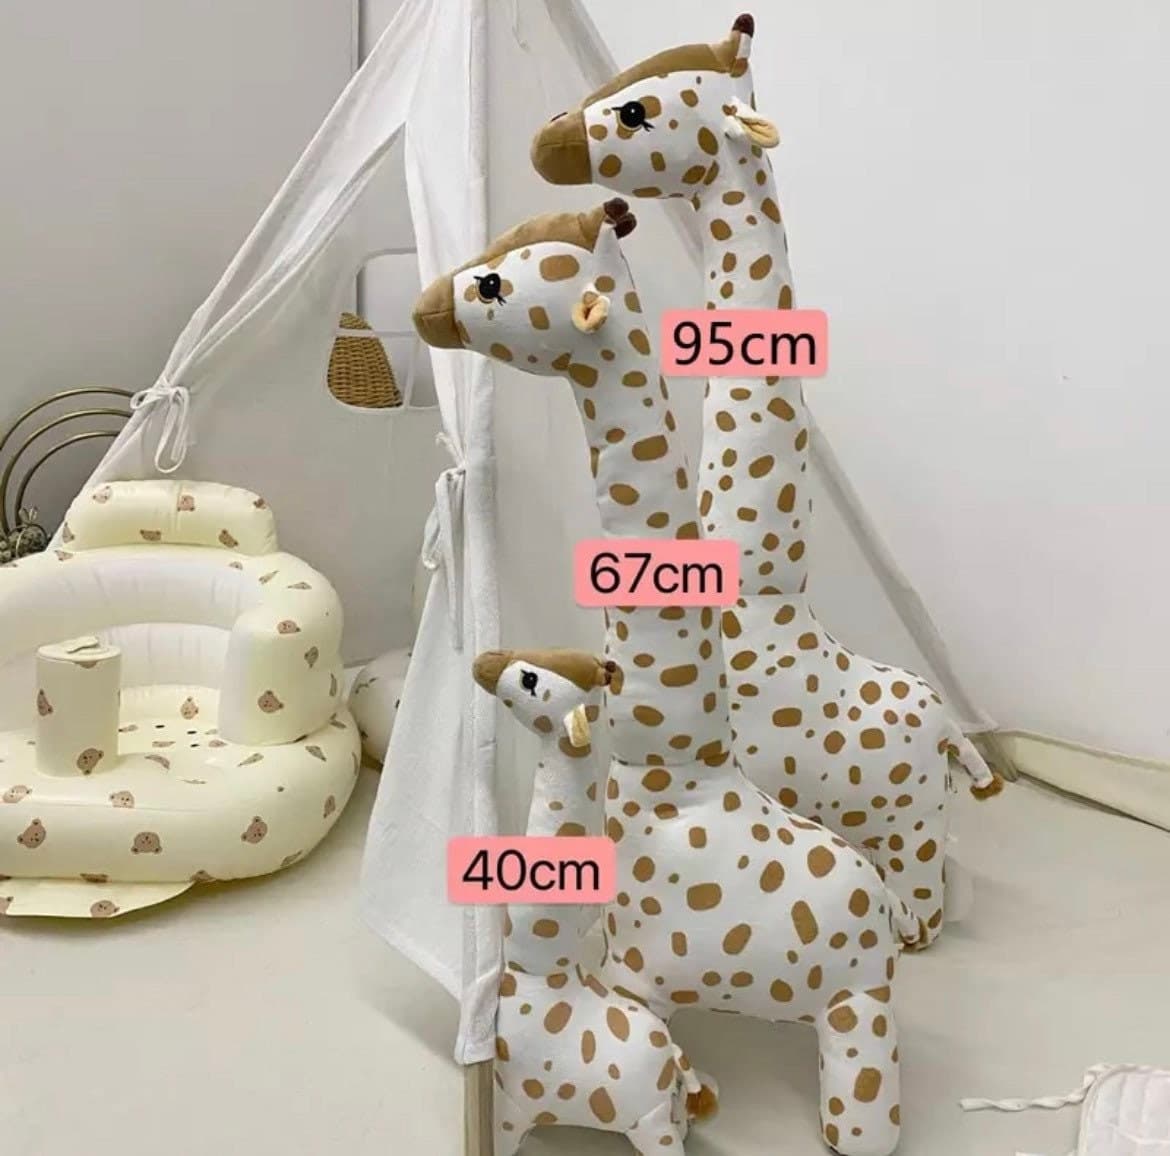 Nursery Giraffe - Big Size Simulation Giraffe Toy.